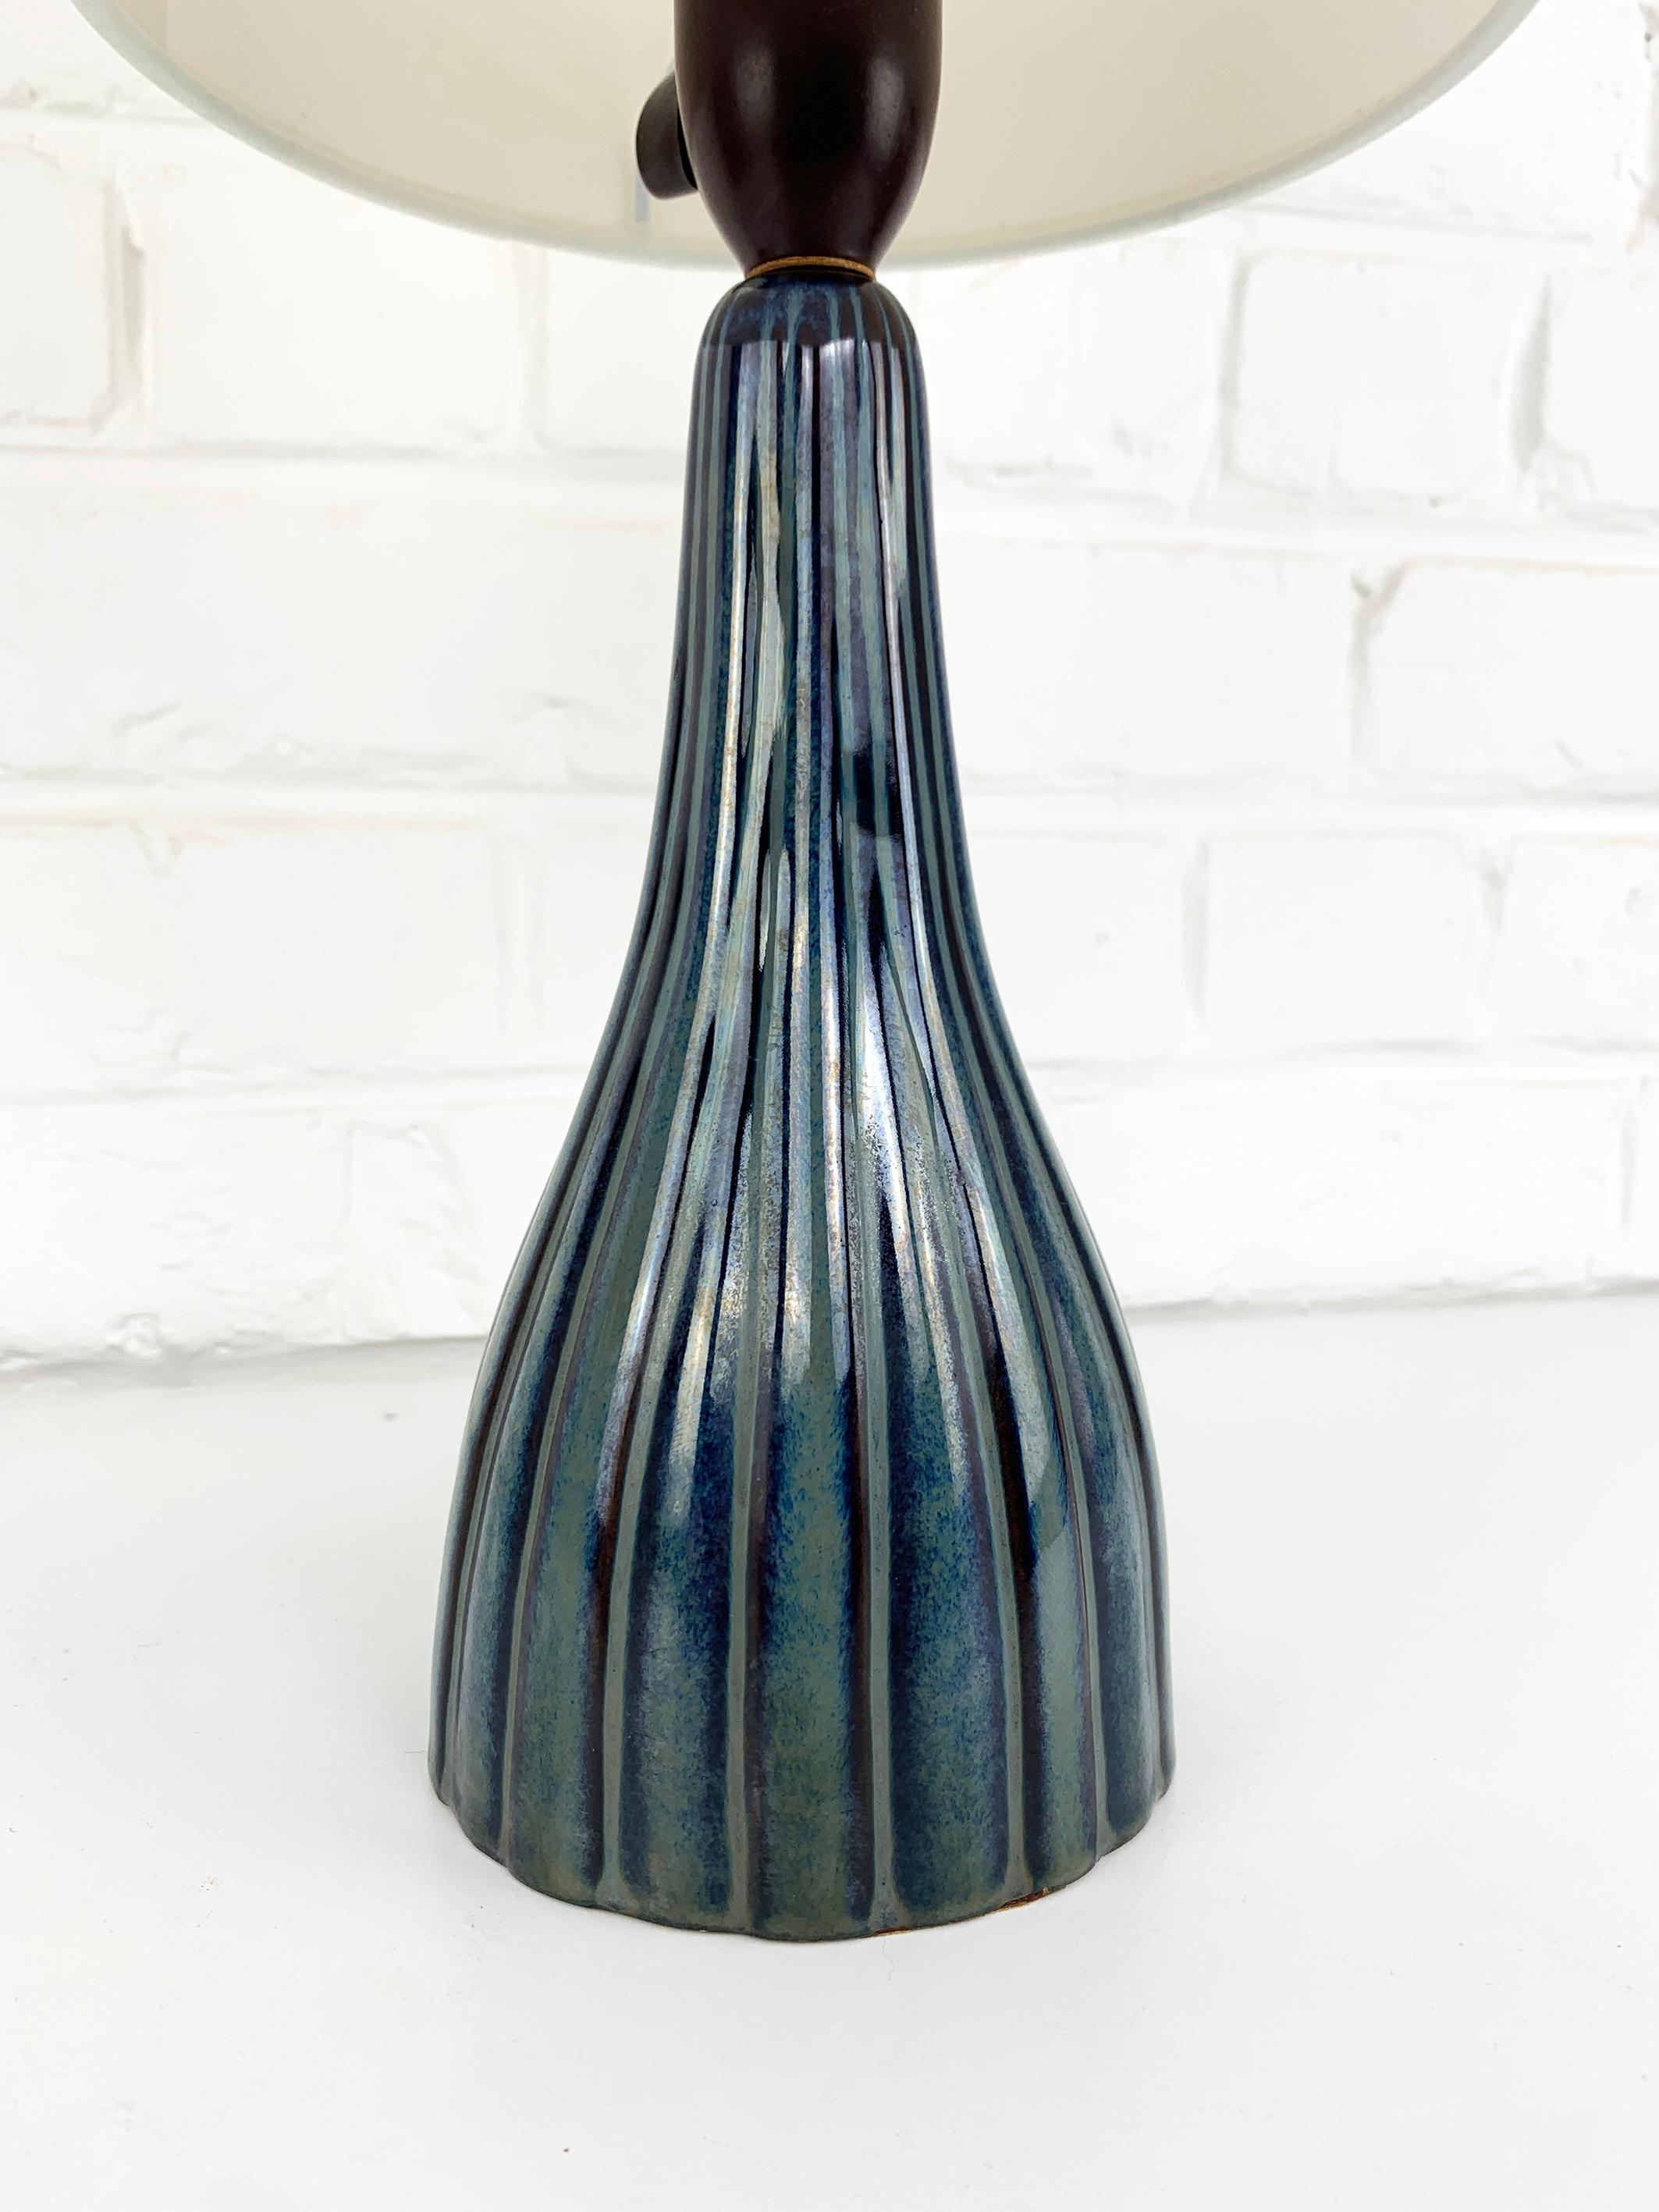 Dänische Keramik-Tischlampe aus der Jahrhundertmitte der 1950-60er Jahre. Sehr elegantes Design, verziert mit einem Streifenmuster in blau-grauen Farben.

Unbekannter Designer, aber der Stil der Kreationen von Svend Aage Jensen und Svend Aage